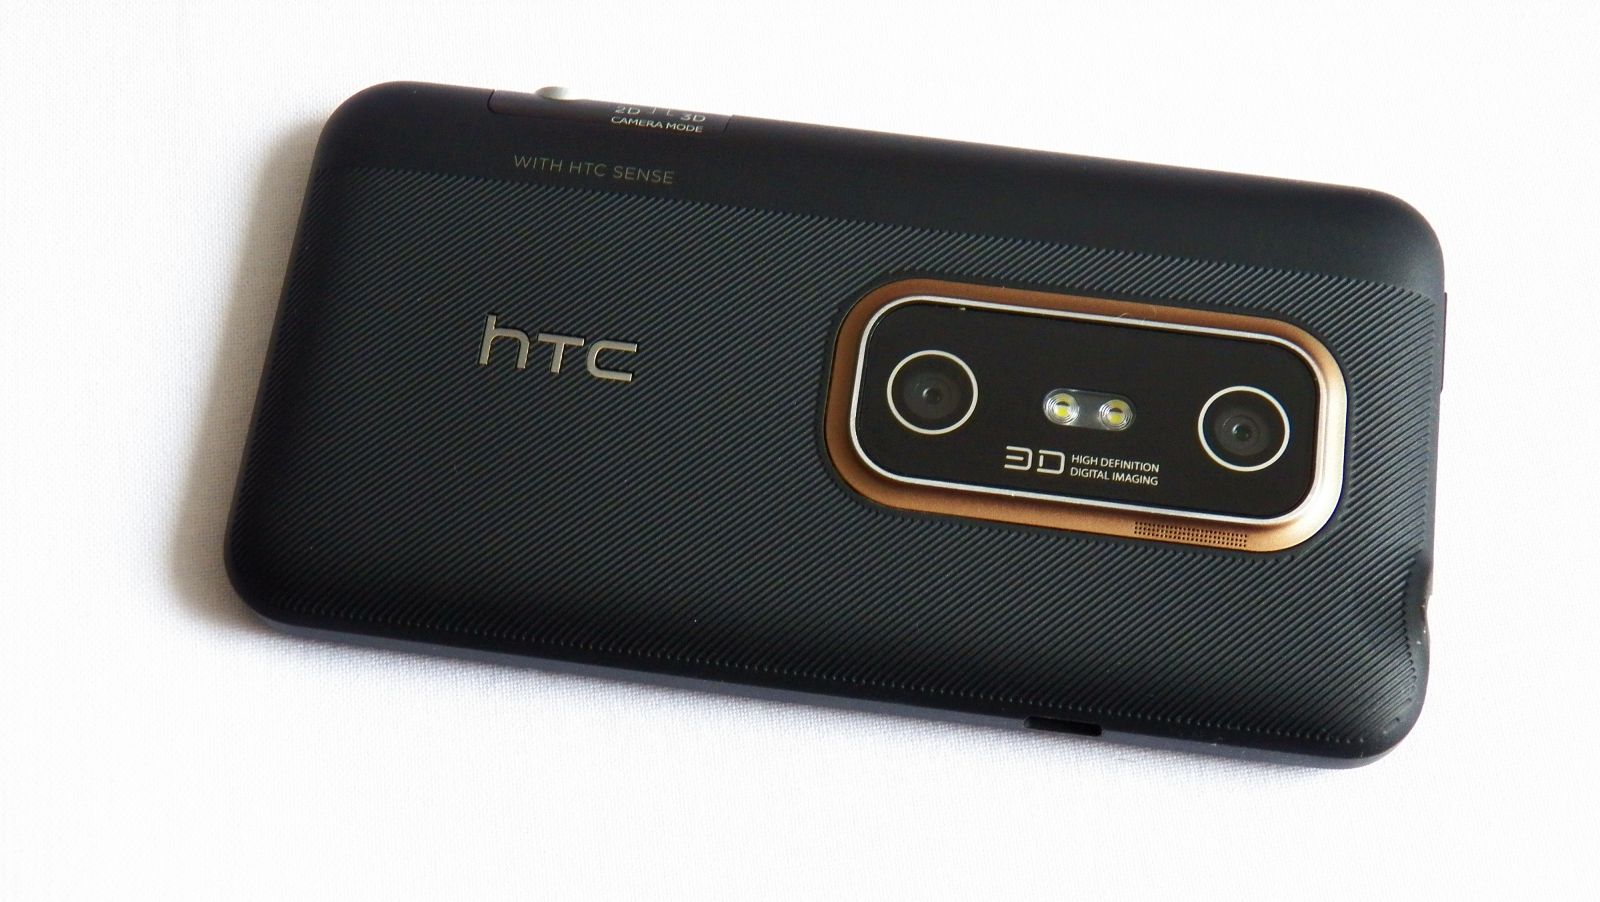 Das HTC Evo 3D war neben dem LG Optimus 3D eines der wenigen Smartphones mit 3D-Fähigem Bildschirm. Mit der 3D-Kamera konnten entsprechende Bilder und Videos erstellt werden. 